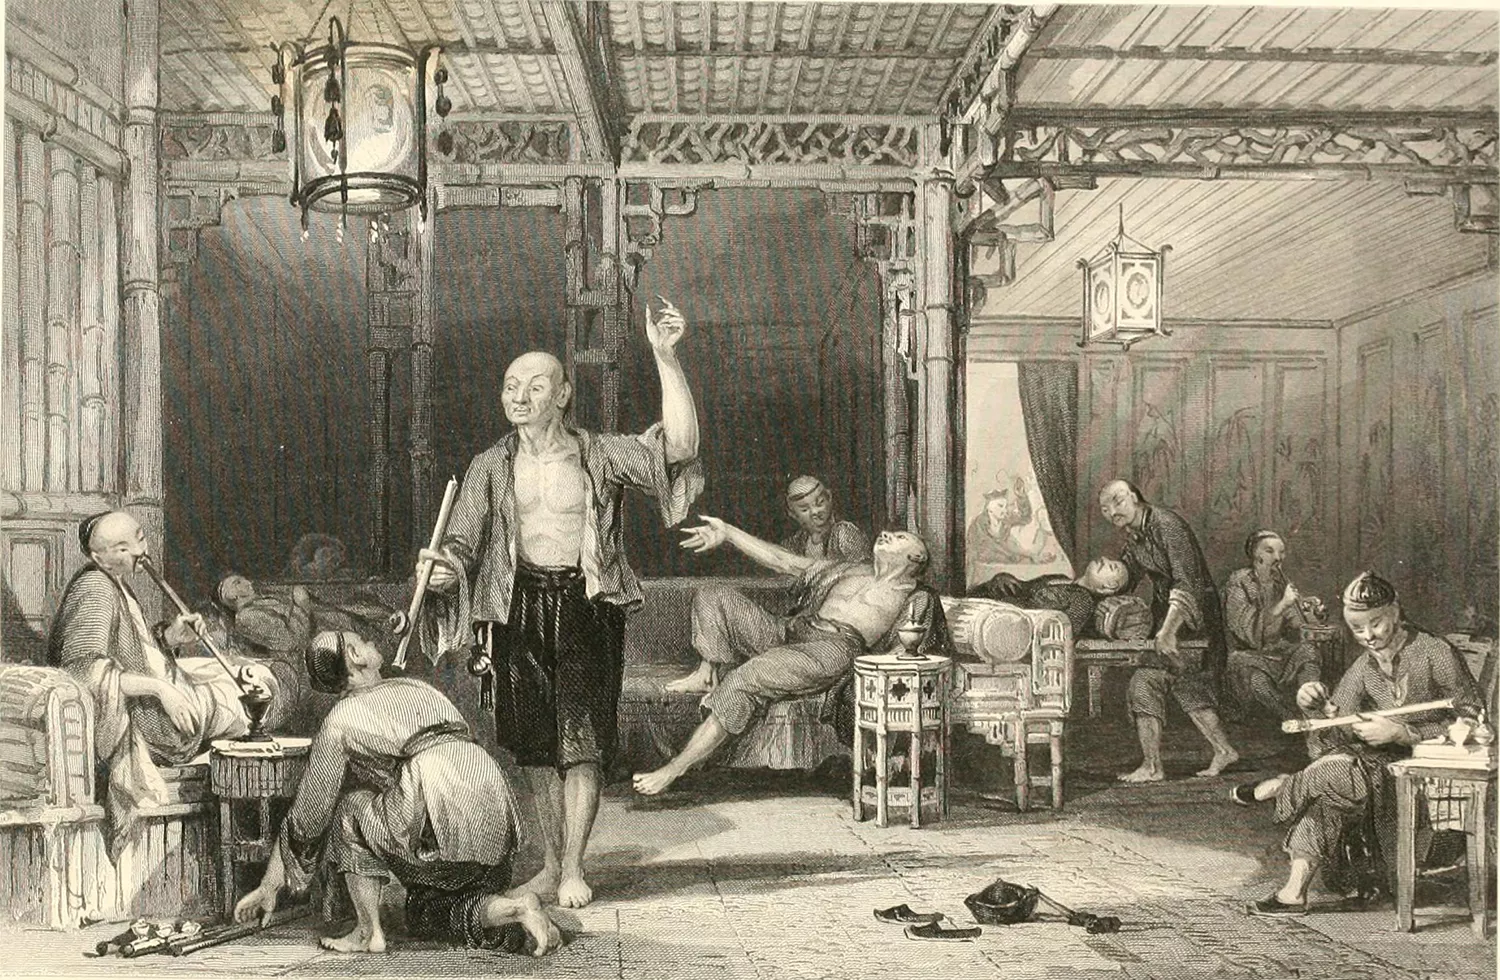 Fumadors d'opi en un gravat de Thomas Allom publicat a 'The Chinese Empire Illustrated' el 1858